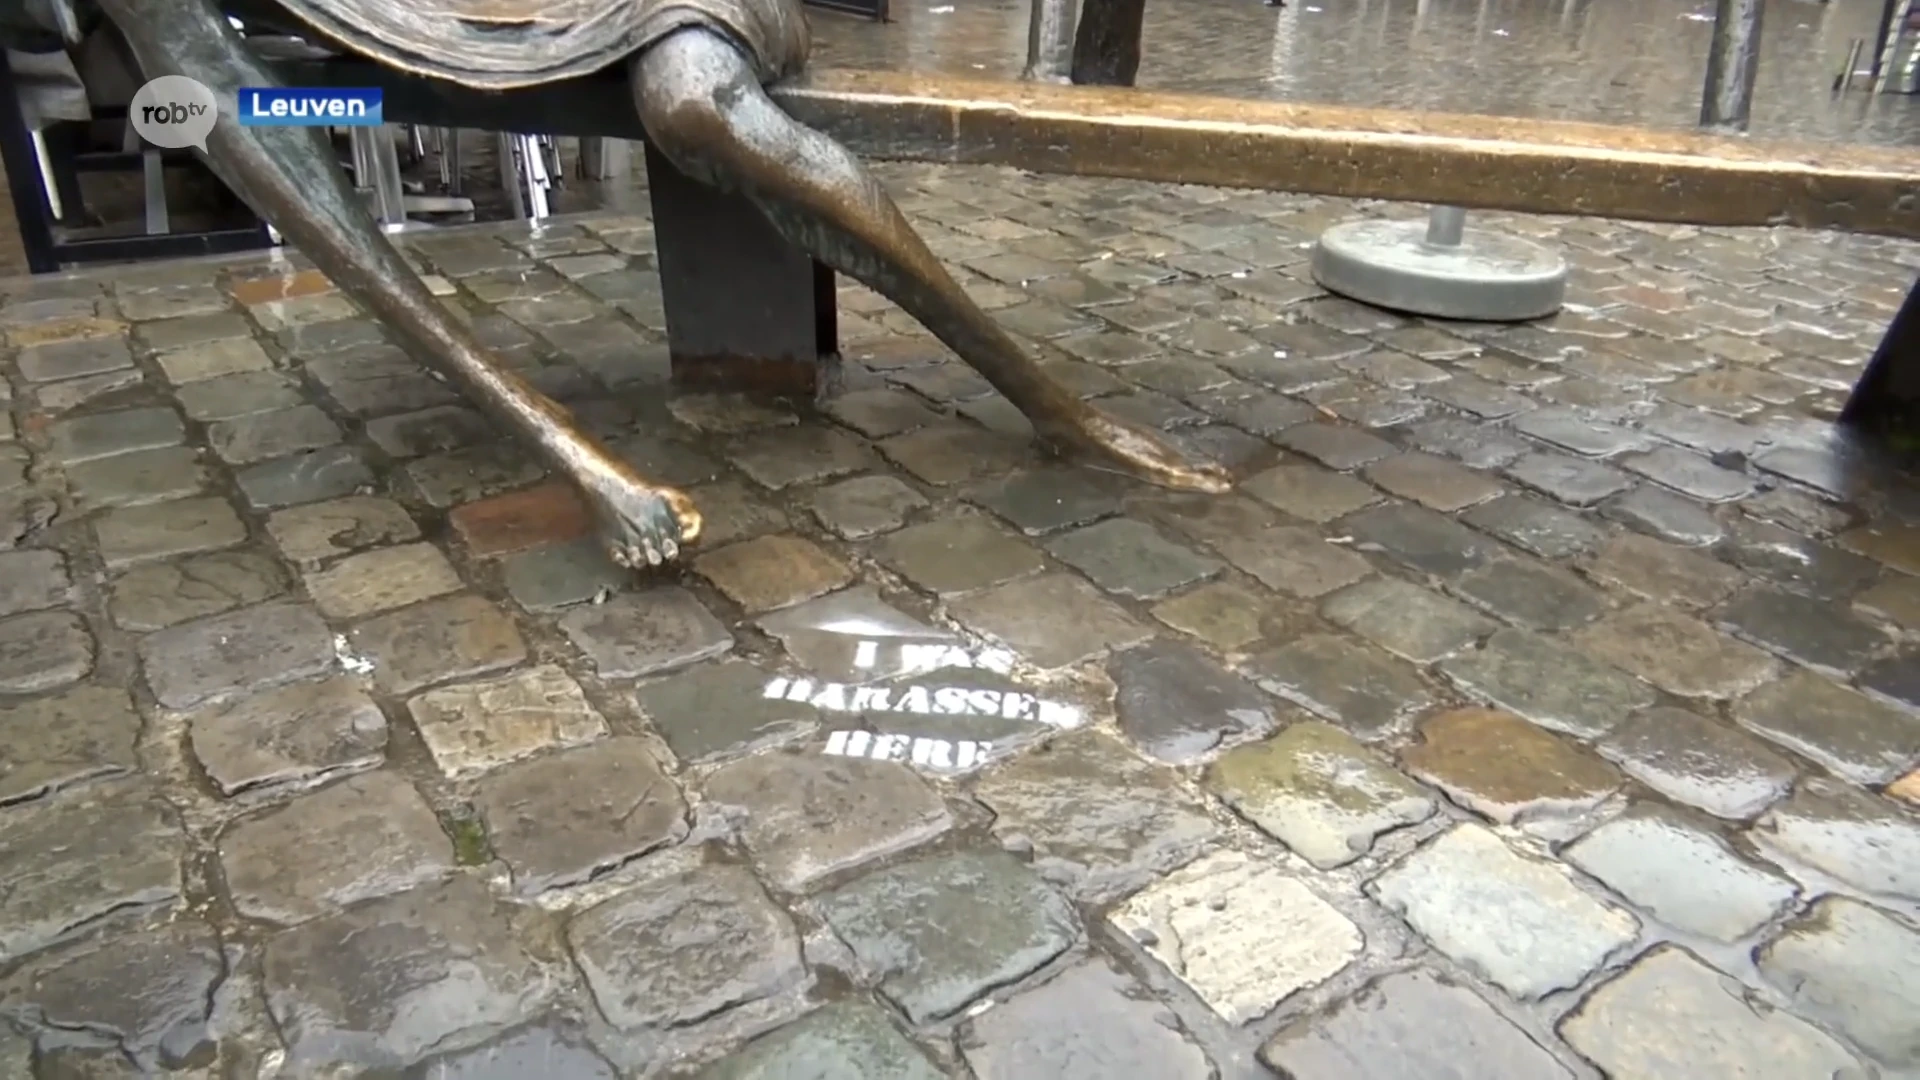 Opvallende boodschap 'I was harassed here' op Oude Markt en Bondgenotenlaan